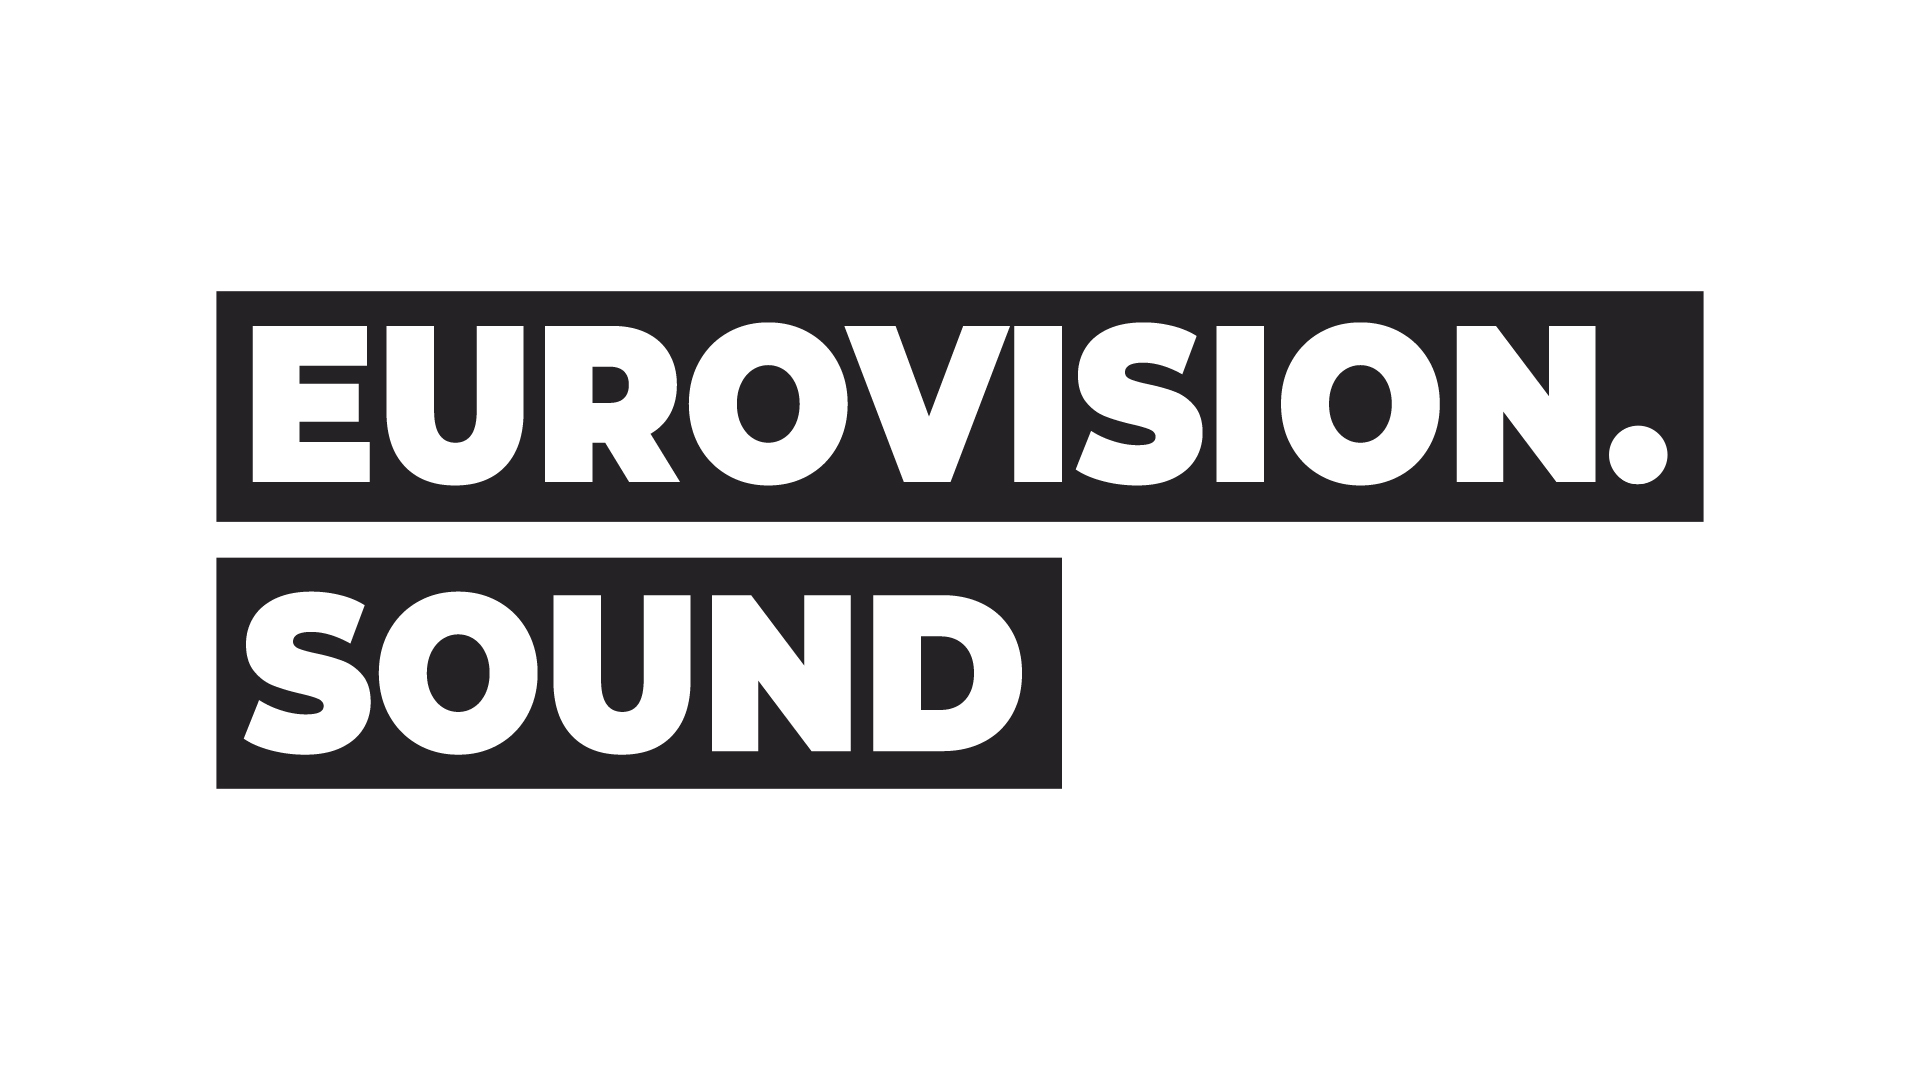 Eurovision Sound arranca nueva temporada el 21 de Septiembre